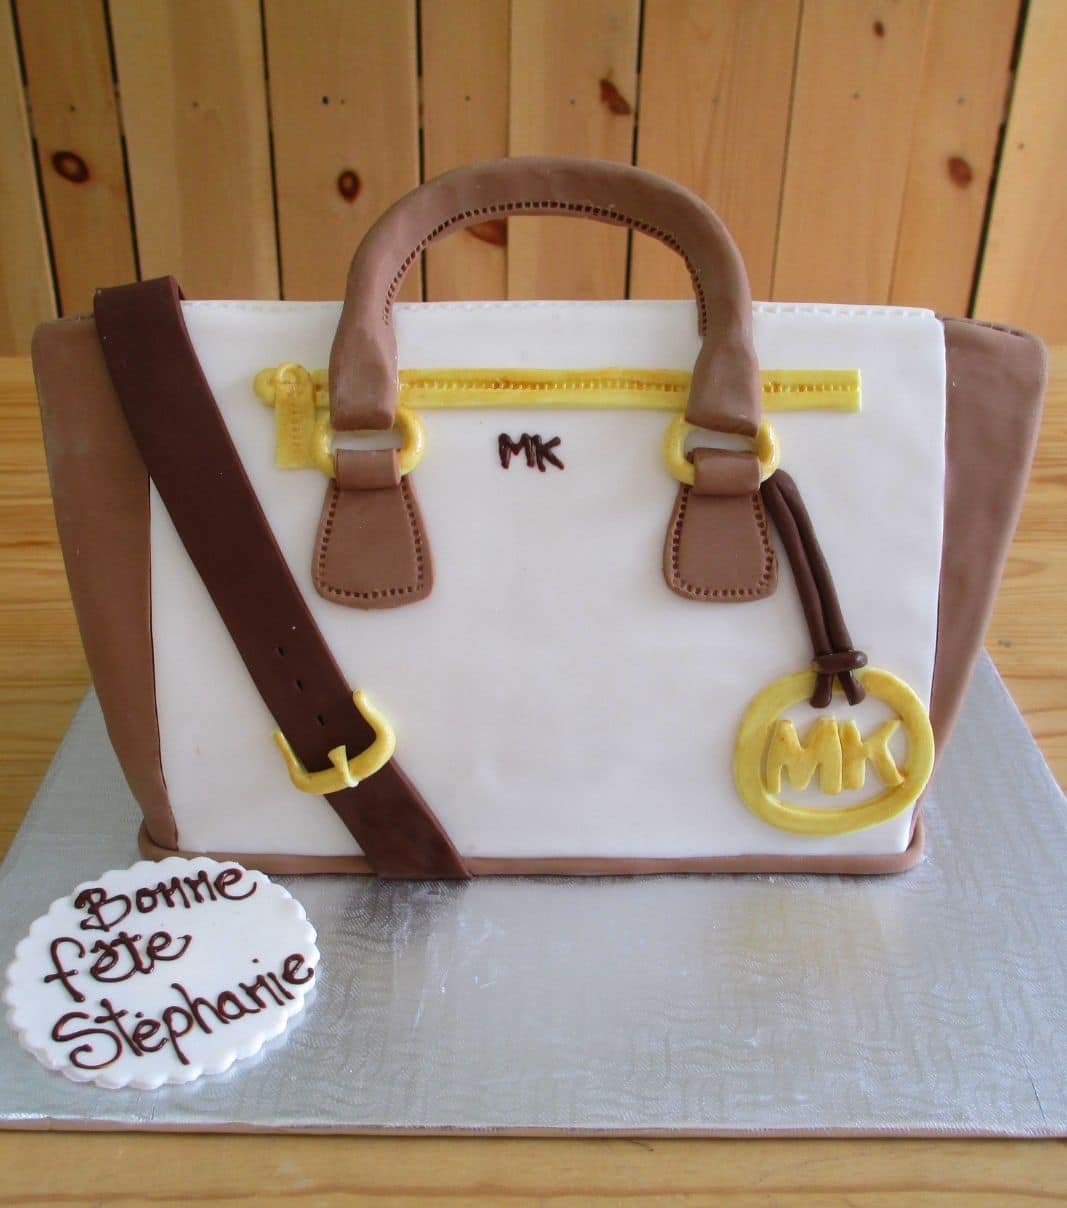 Gâteau d'anniversaire sur mesure de Stéphanie: gâteau en forme de sac à main Michael Kors en 3D avec une couverture en fondant.